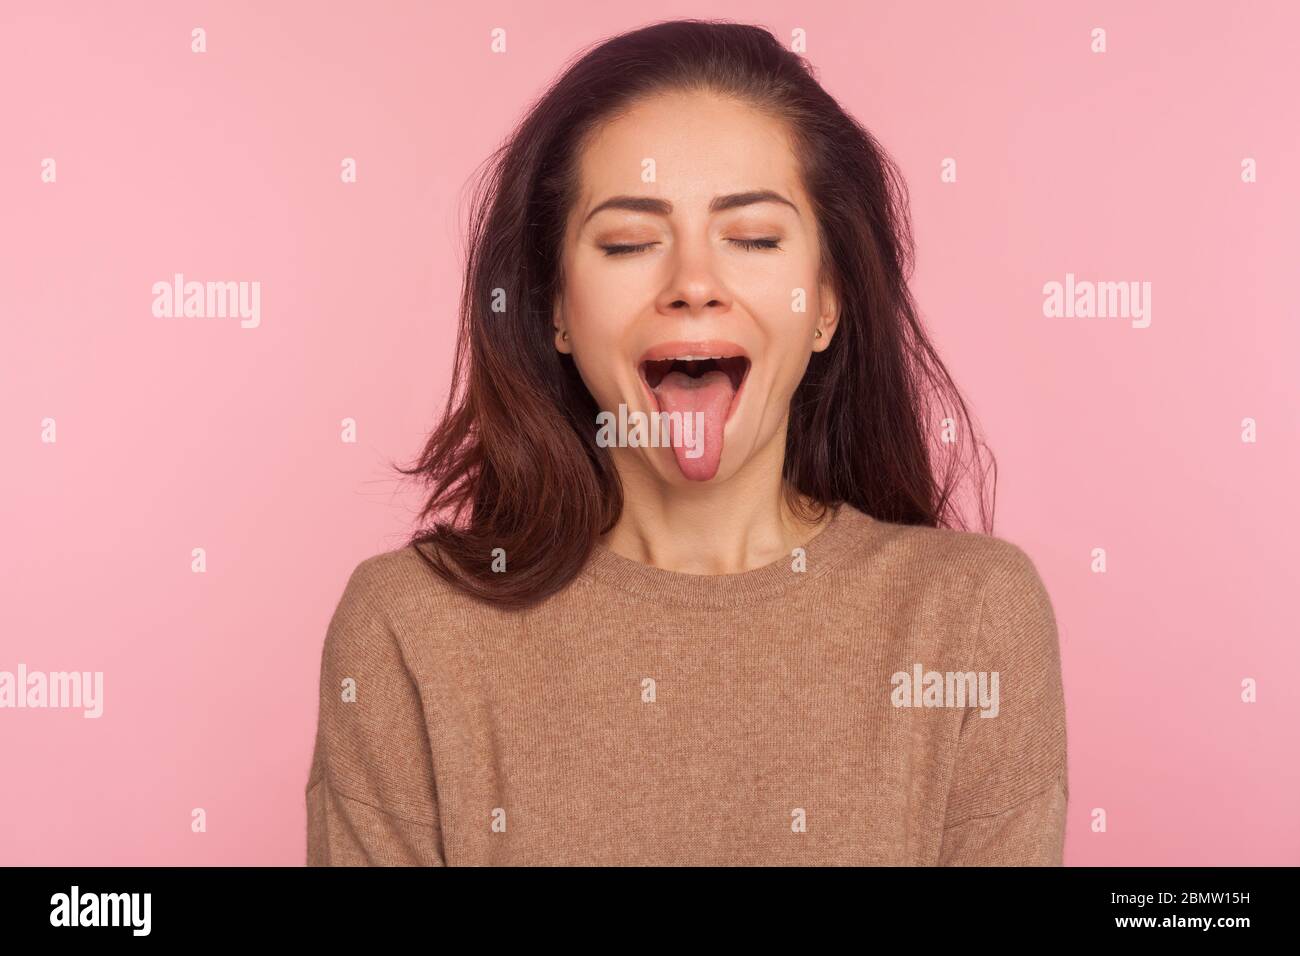 Porträt von lustigen ungehorsamen junge Frau mit brünetten Haar Augen geschlossen und Demonstration Zunge, Verhalten freche widerspenstige, kindliche Stimmung. ind Stockfoto